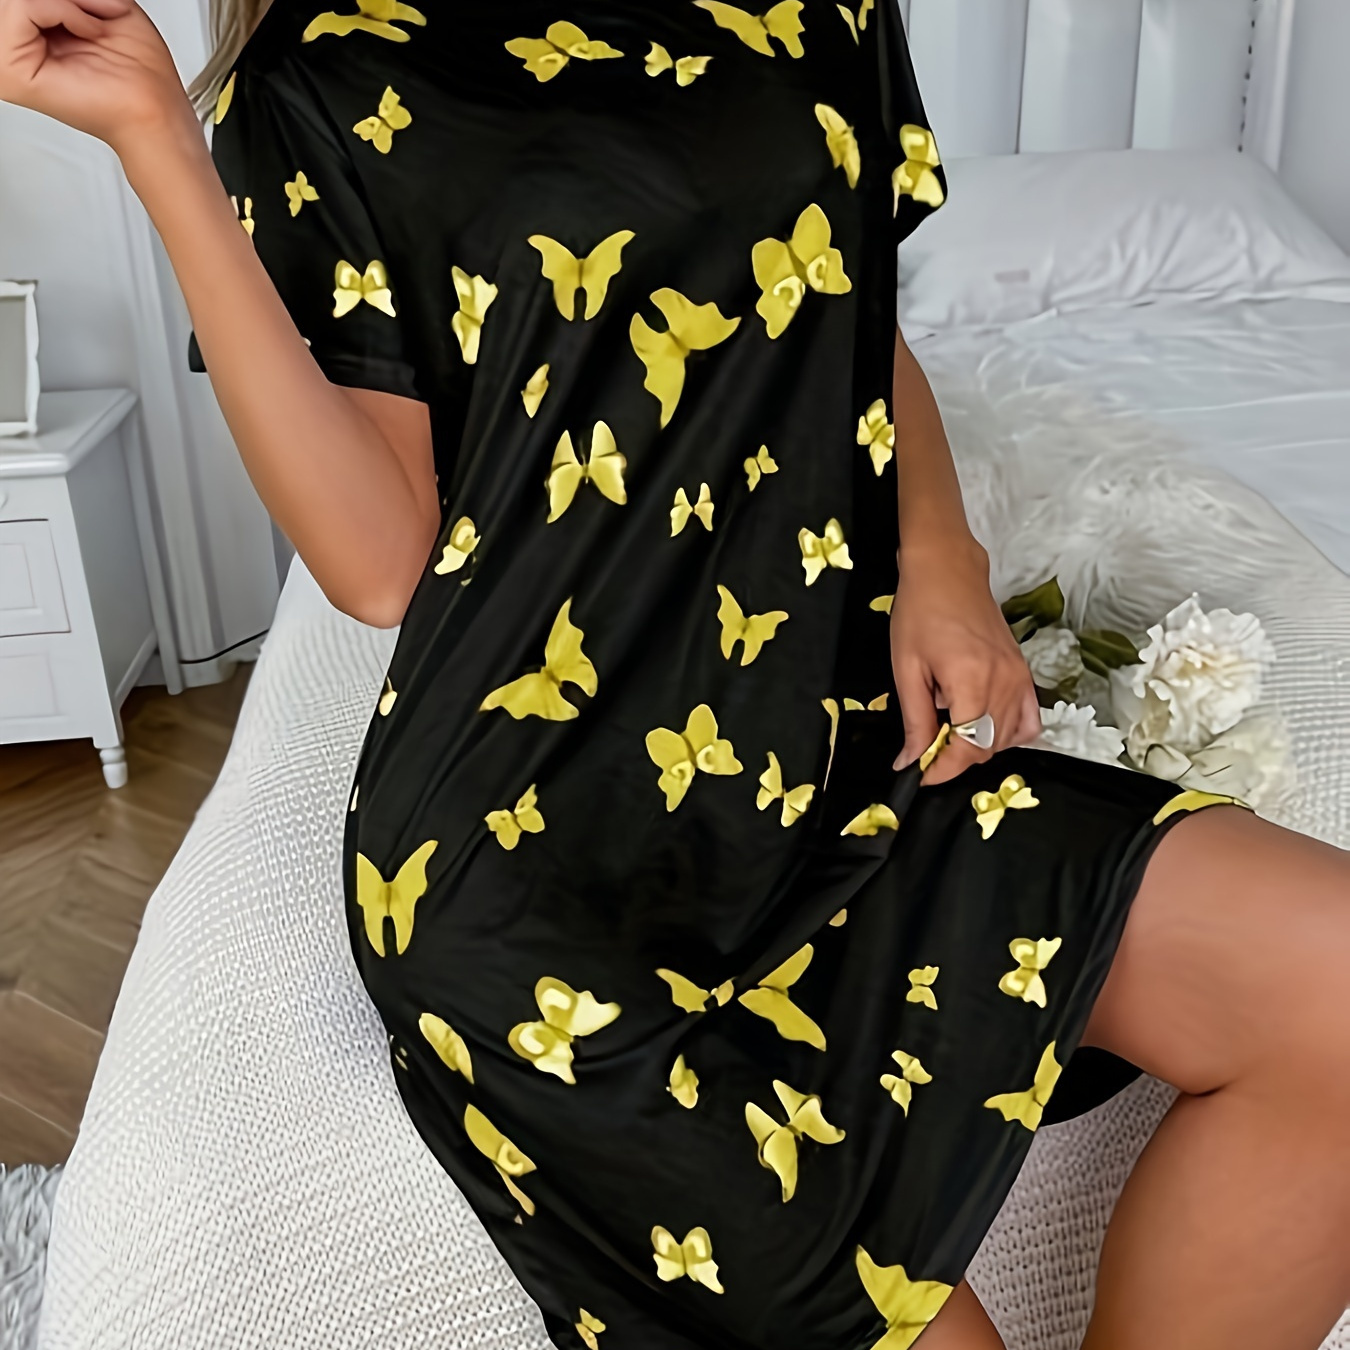 

Women's Short Sleeve Butterfly Print Dress Sleepwear, Cute Style, Casual Nightdress, Loungewear, Comfy Home Apparel